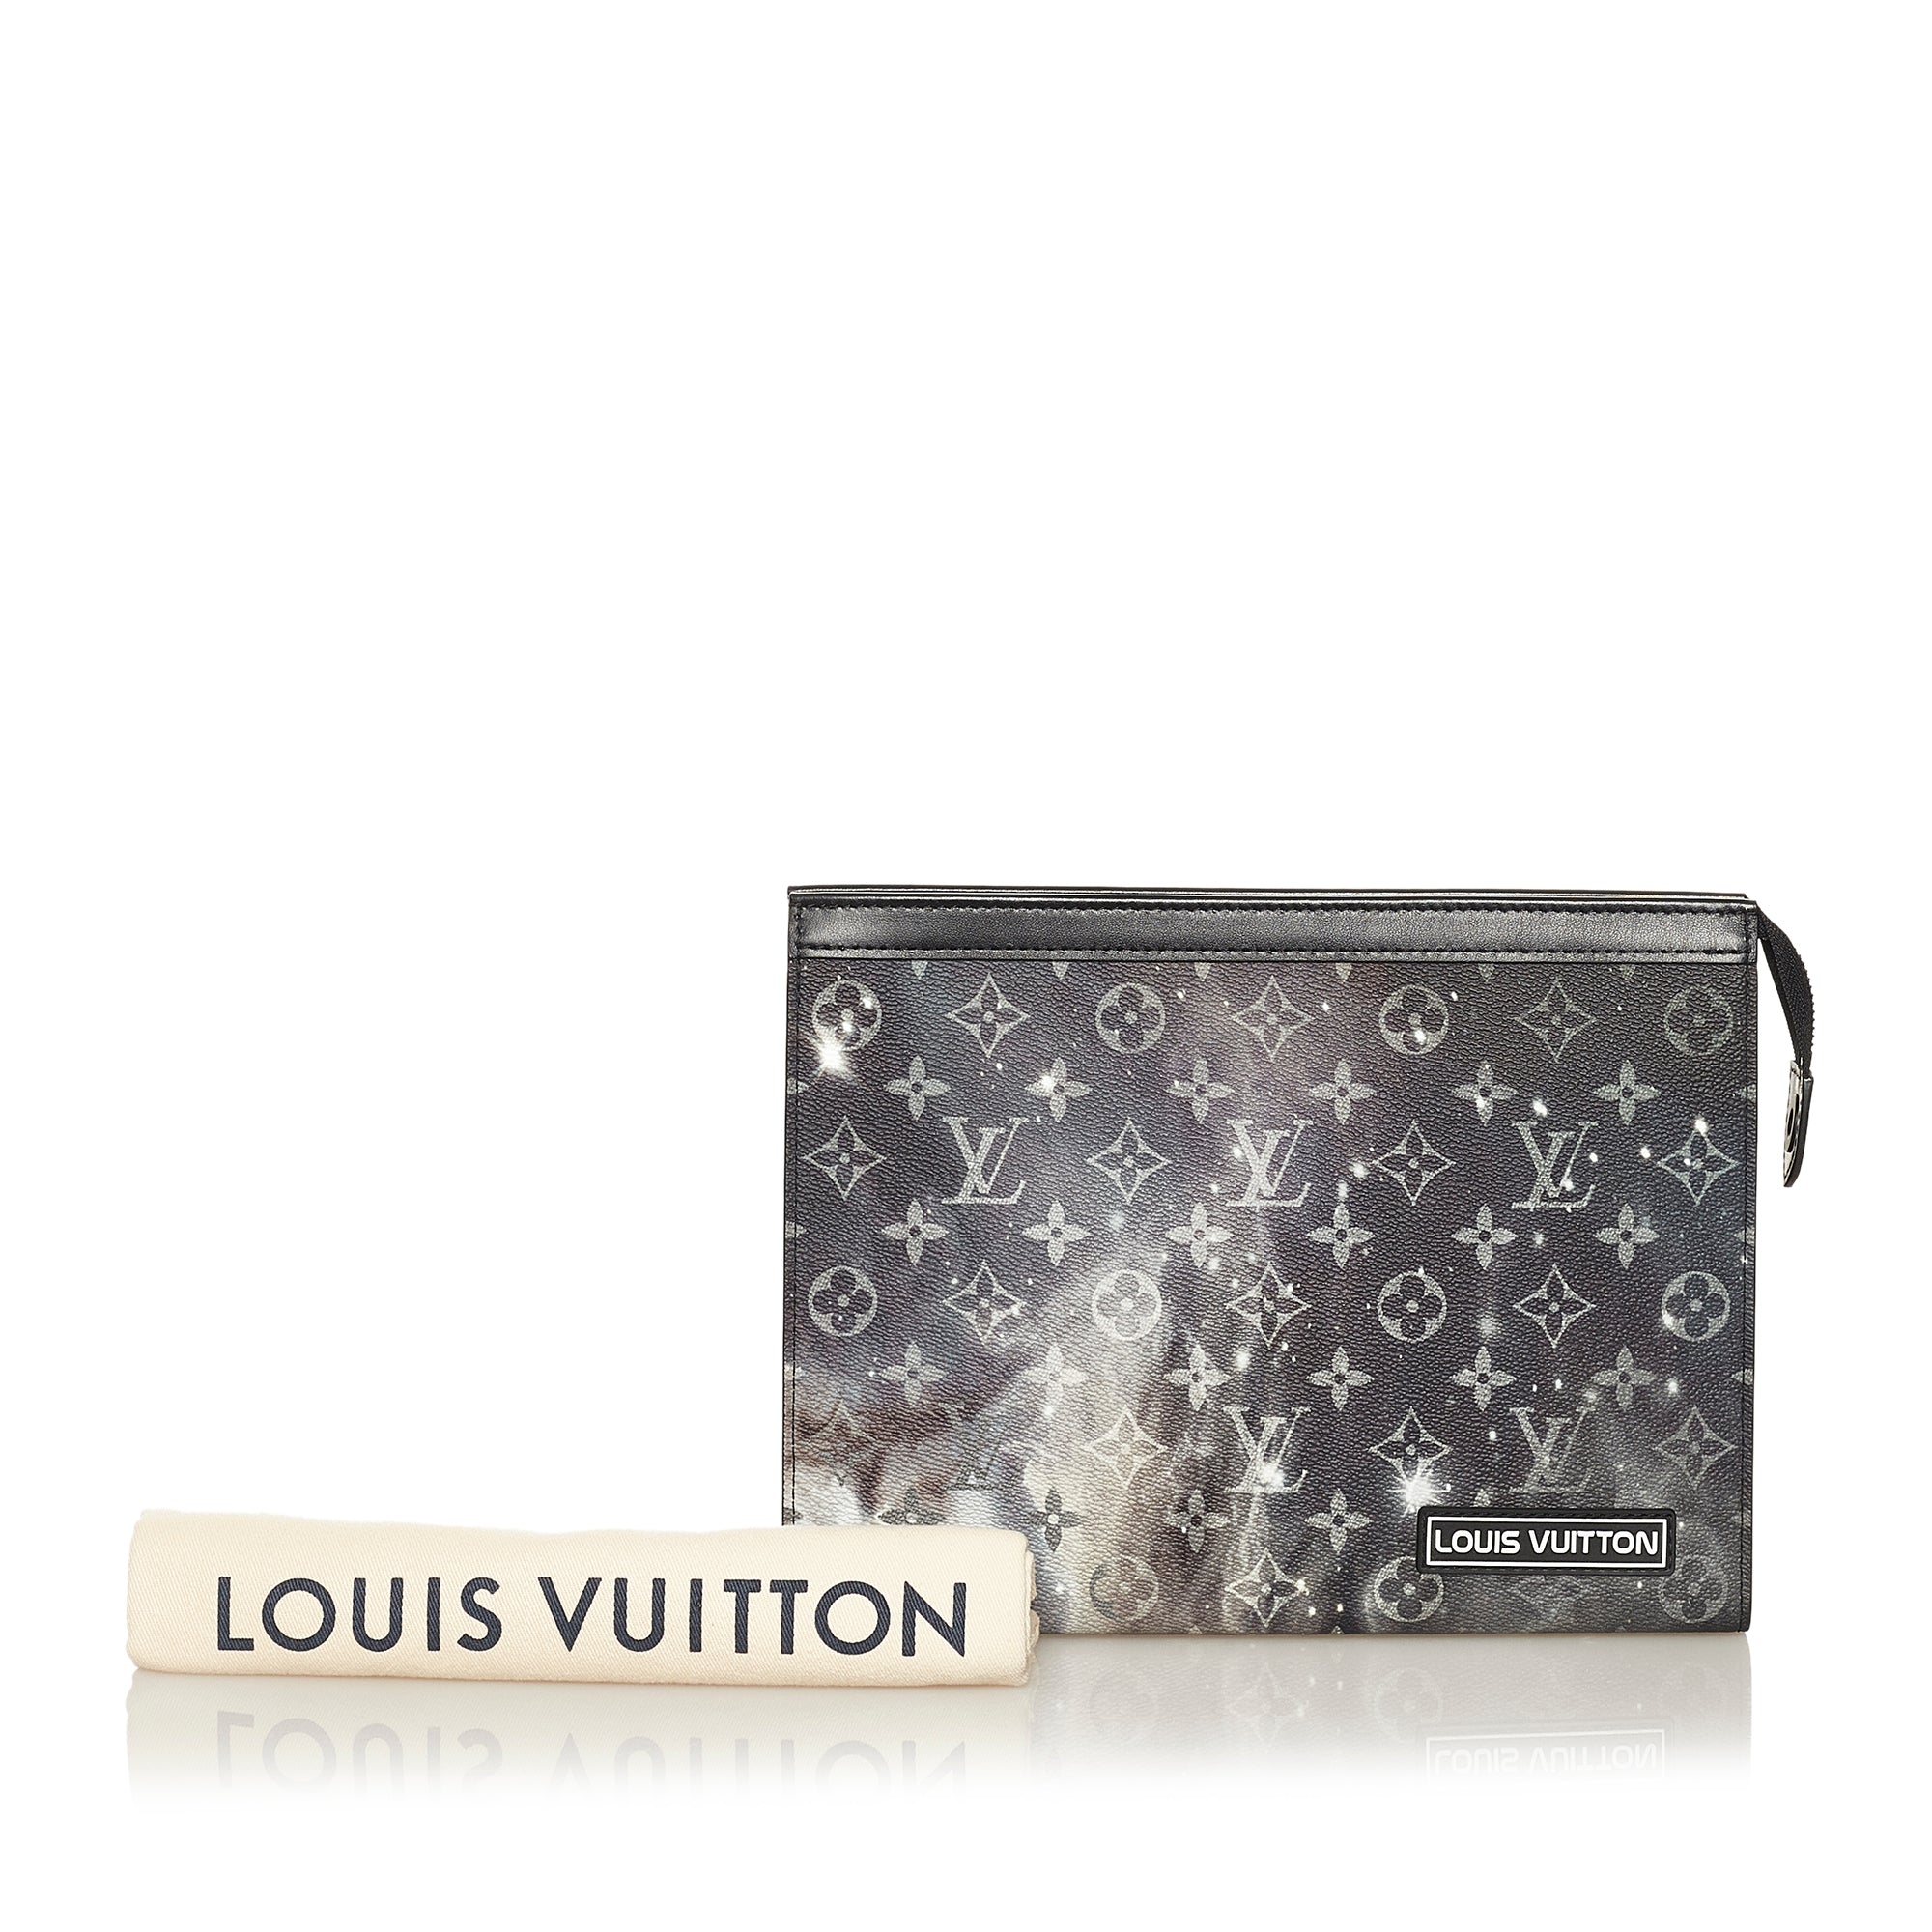 Pre-owned Louis Vuitton Brazza Wallet Monogram Galaxy Black Multicolor